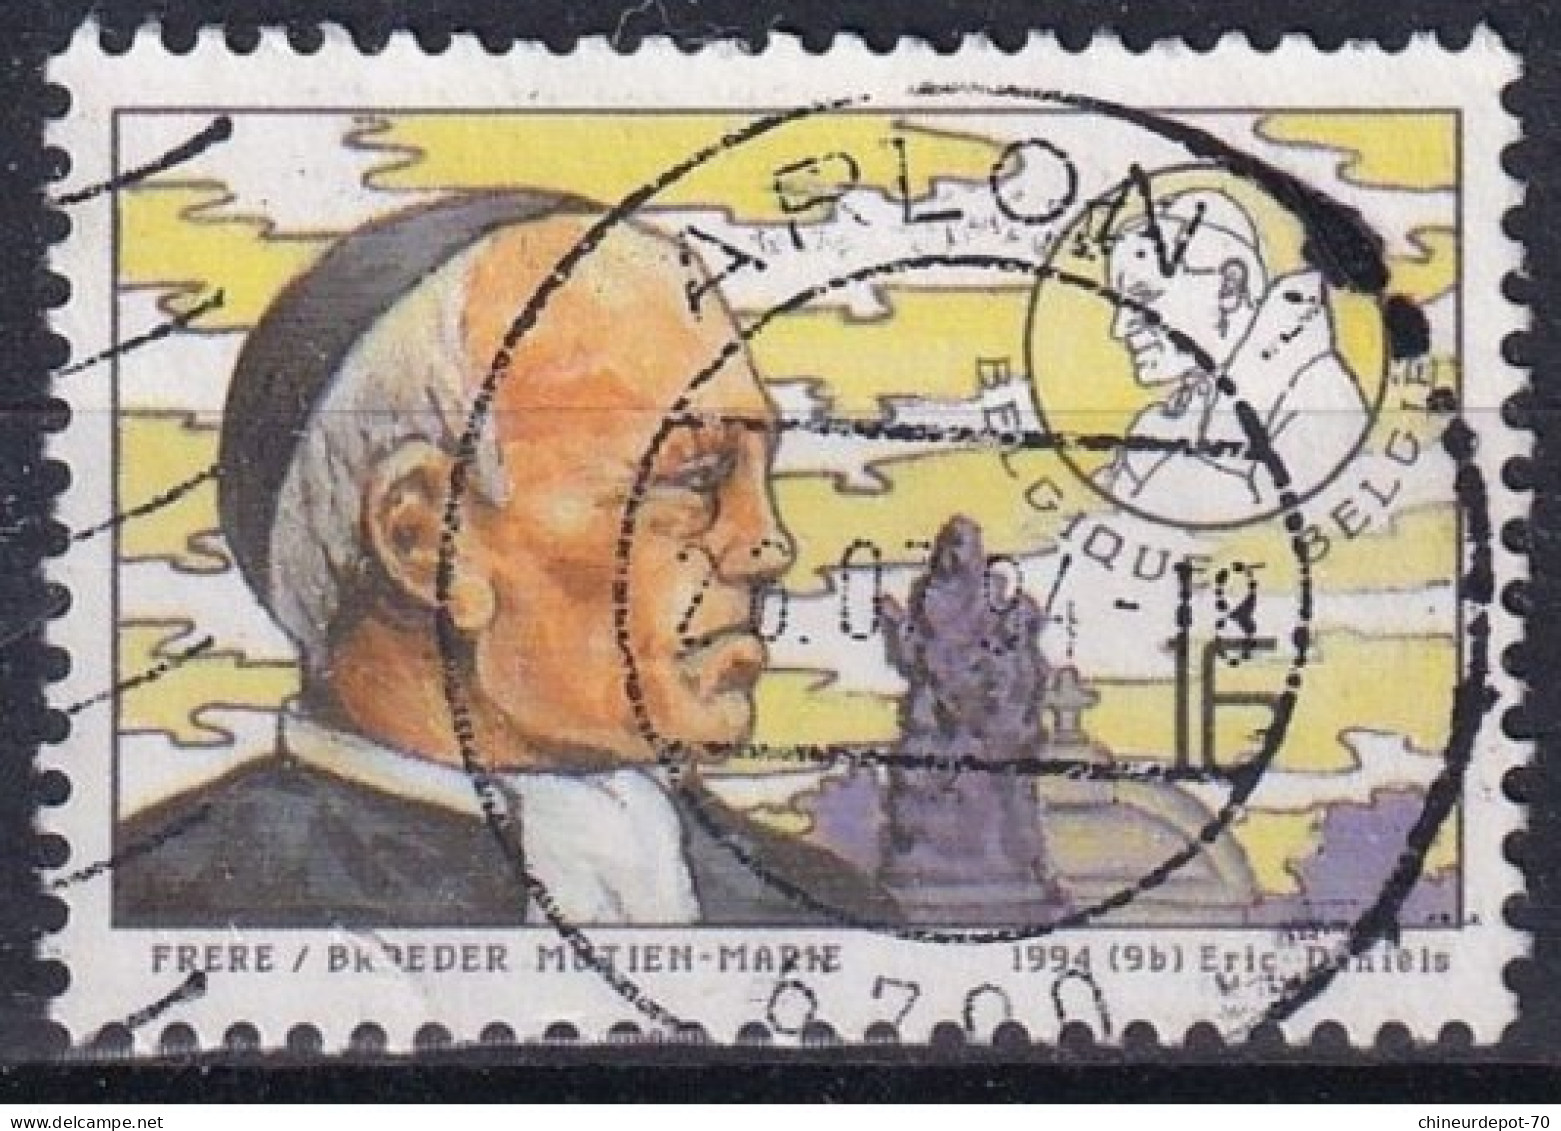 1994 Éric Daniels FRÈRE MUTIEN MARIE  CACHET ARLON - Used Stamps